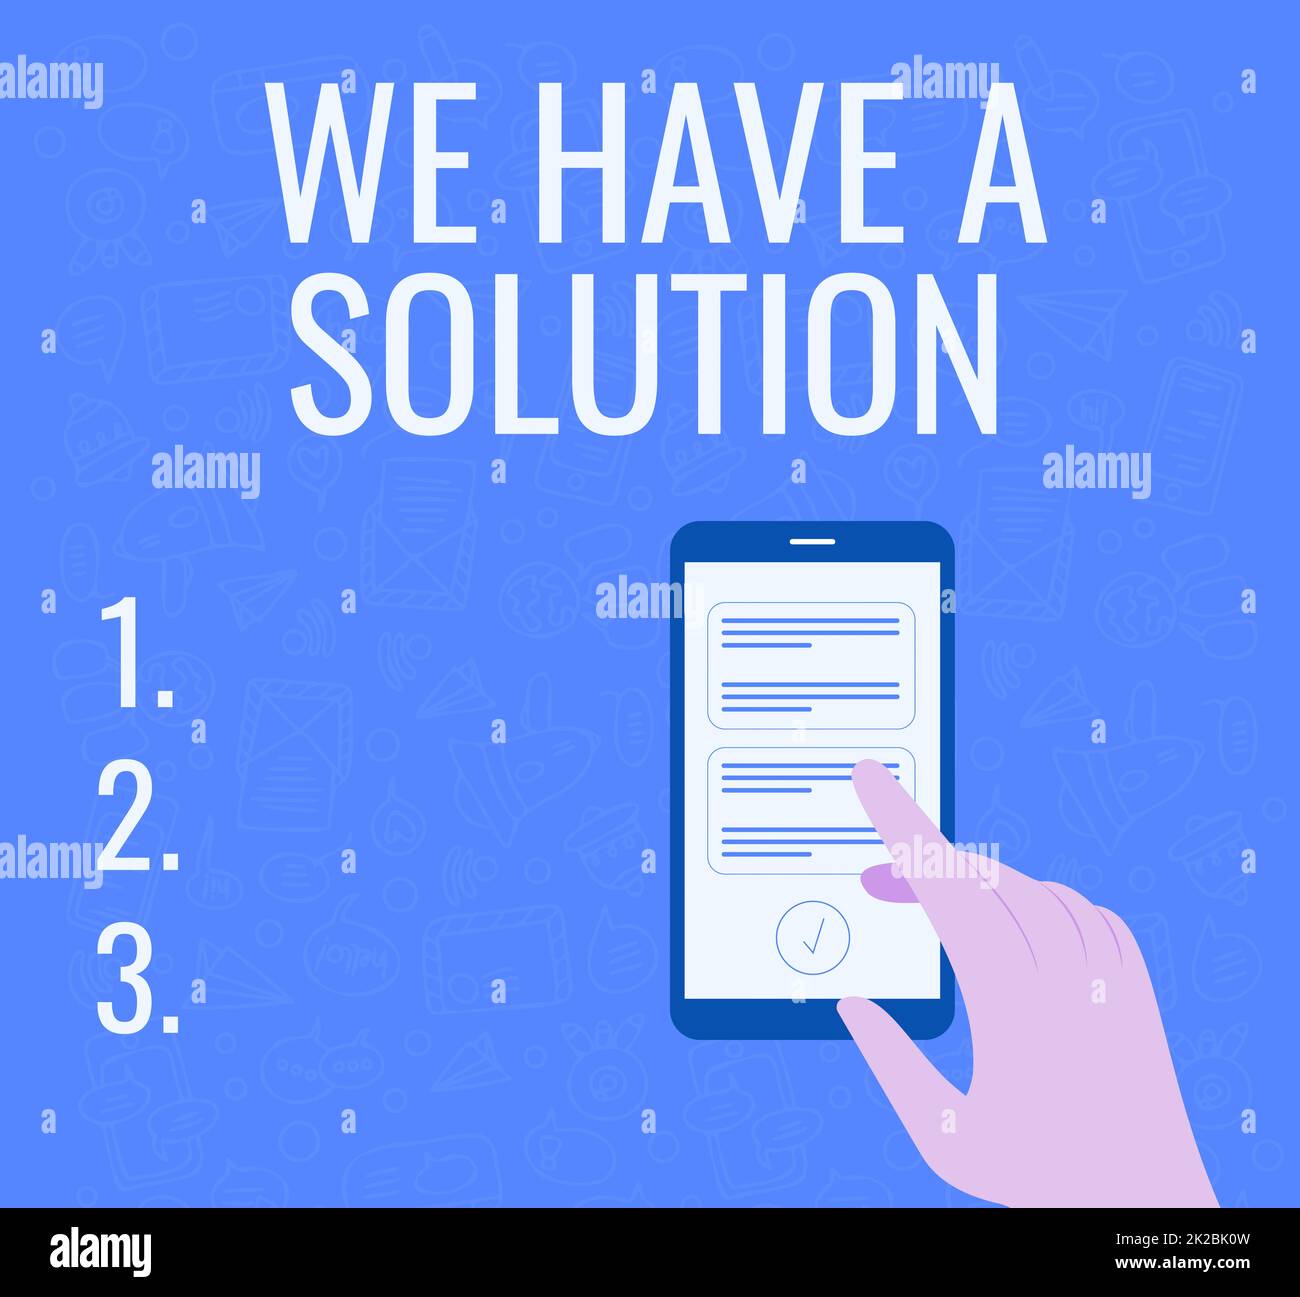 Textunterschrift Presenting Wir haben Eine Lösung, Word für die Präsentation von Antworten auf die Probleme Zeige Ergebnisse Illustration der Hand mit Smart Phone Texting Stockfoto